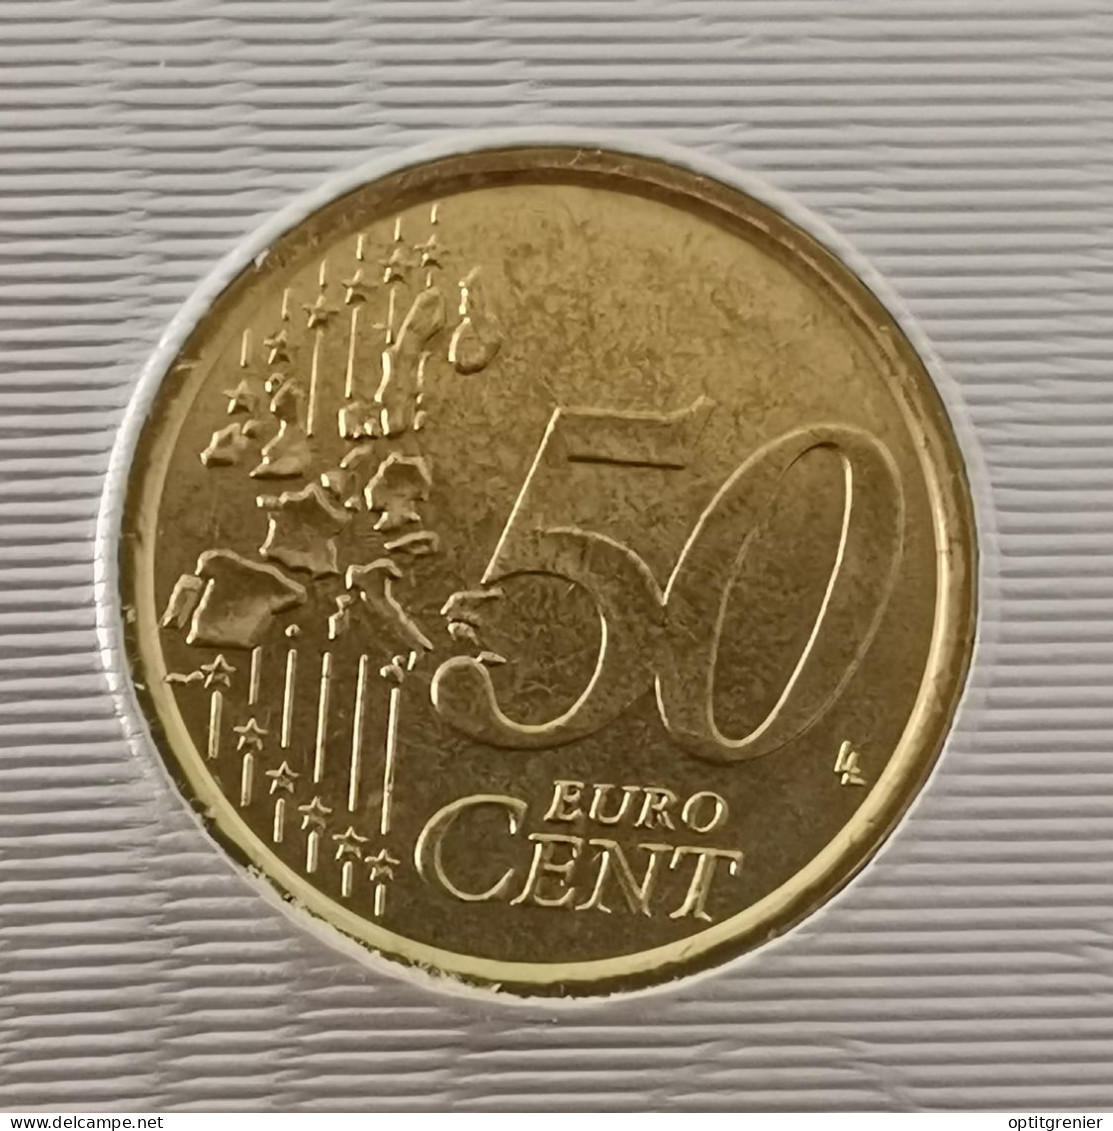 50 EURO CENT VATICAN 2006 / ISSUE DU COFFRET / VATICANO EURO CENTS (UN PEU "SALE") - Vaticano